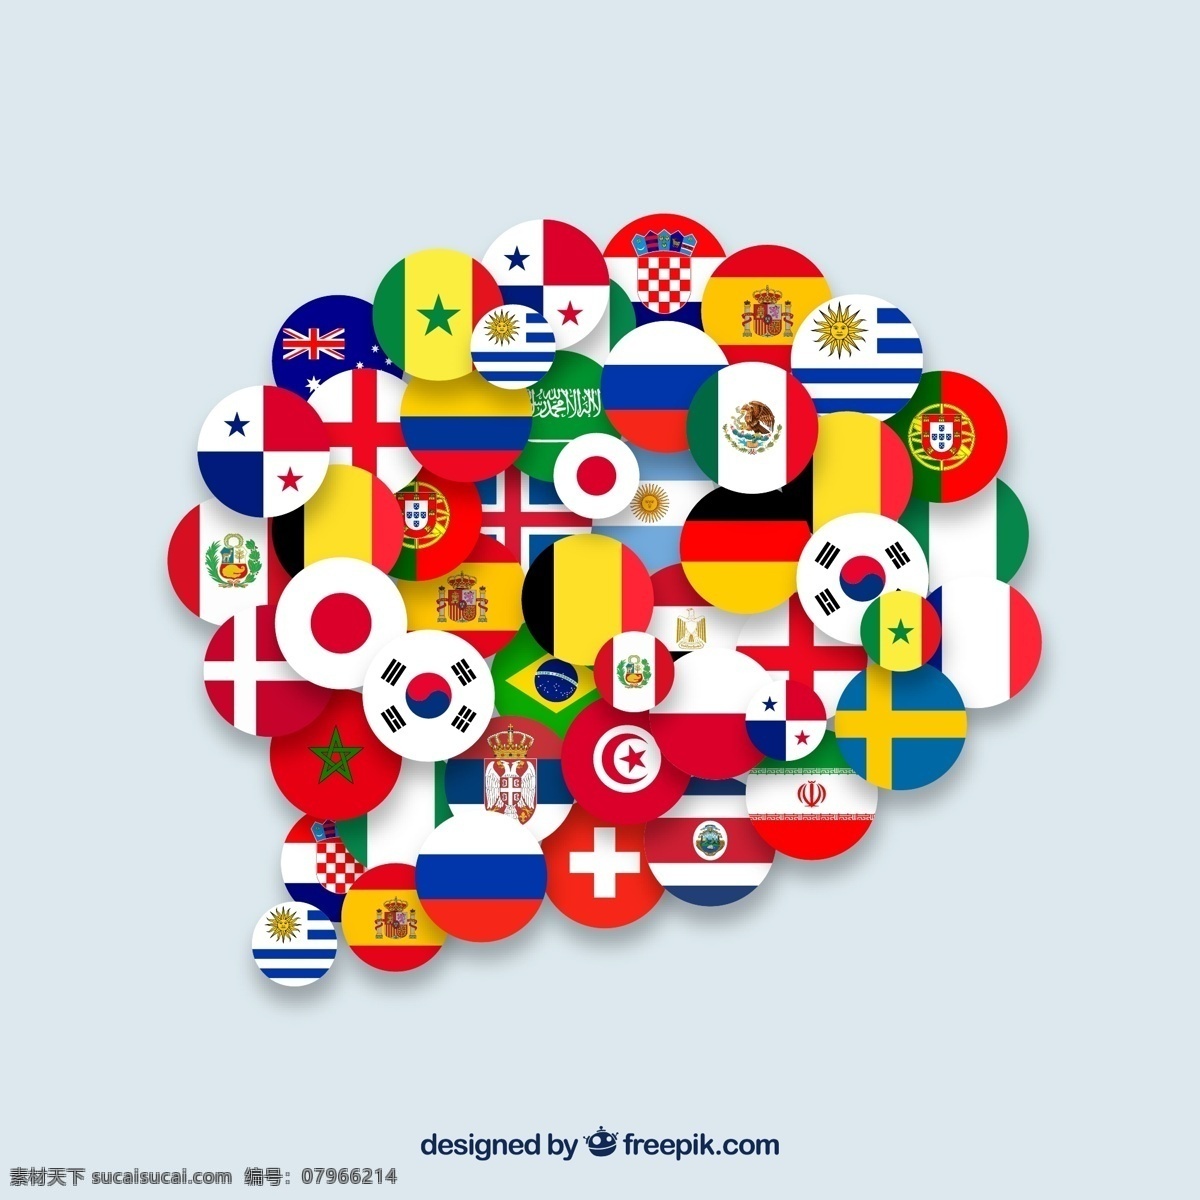 创意 各国 国旗 组合 语言 气泡 矢量图 德国 韩国 日本 瑞士 法国 新西兰 英国 圣马力诺 荷兰 语言气泡